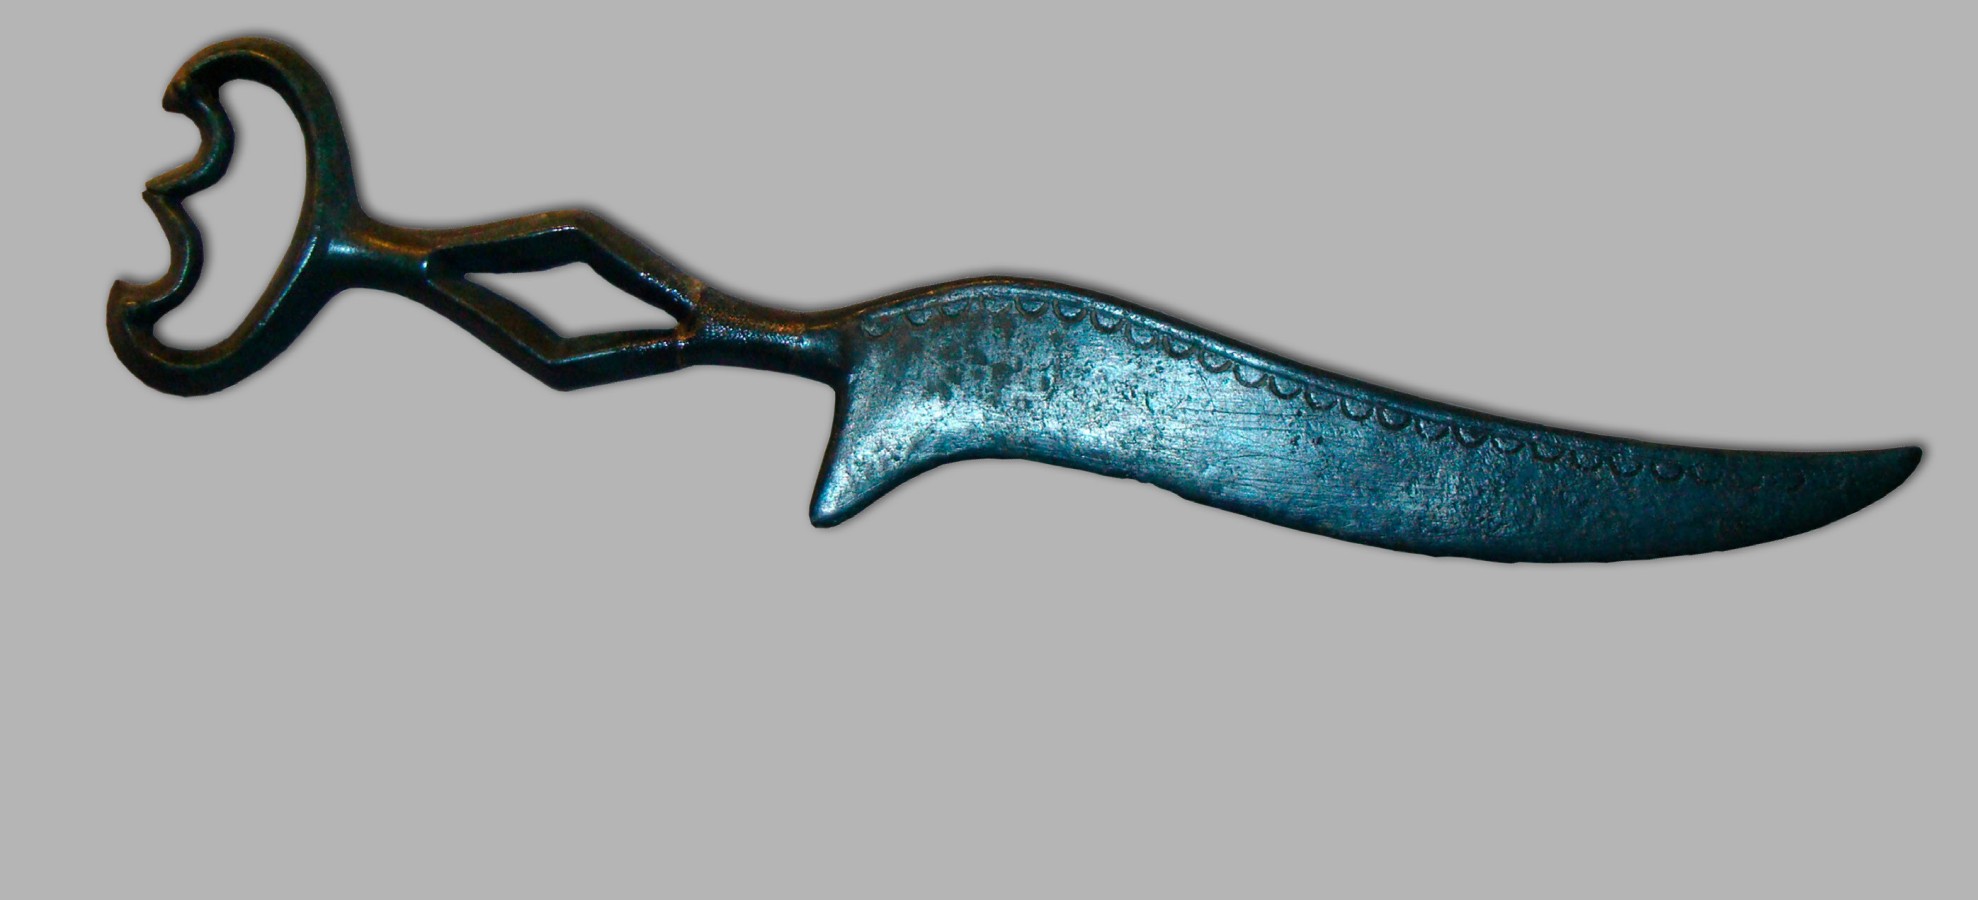 Pannello 1 - foto 1 | Coltello in bronzo a lama serpeggiante | foto Silvano Zamboni © Museo Castello del Buonconsiglio